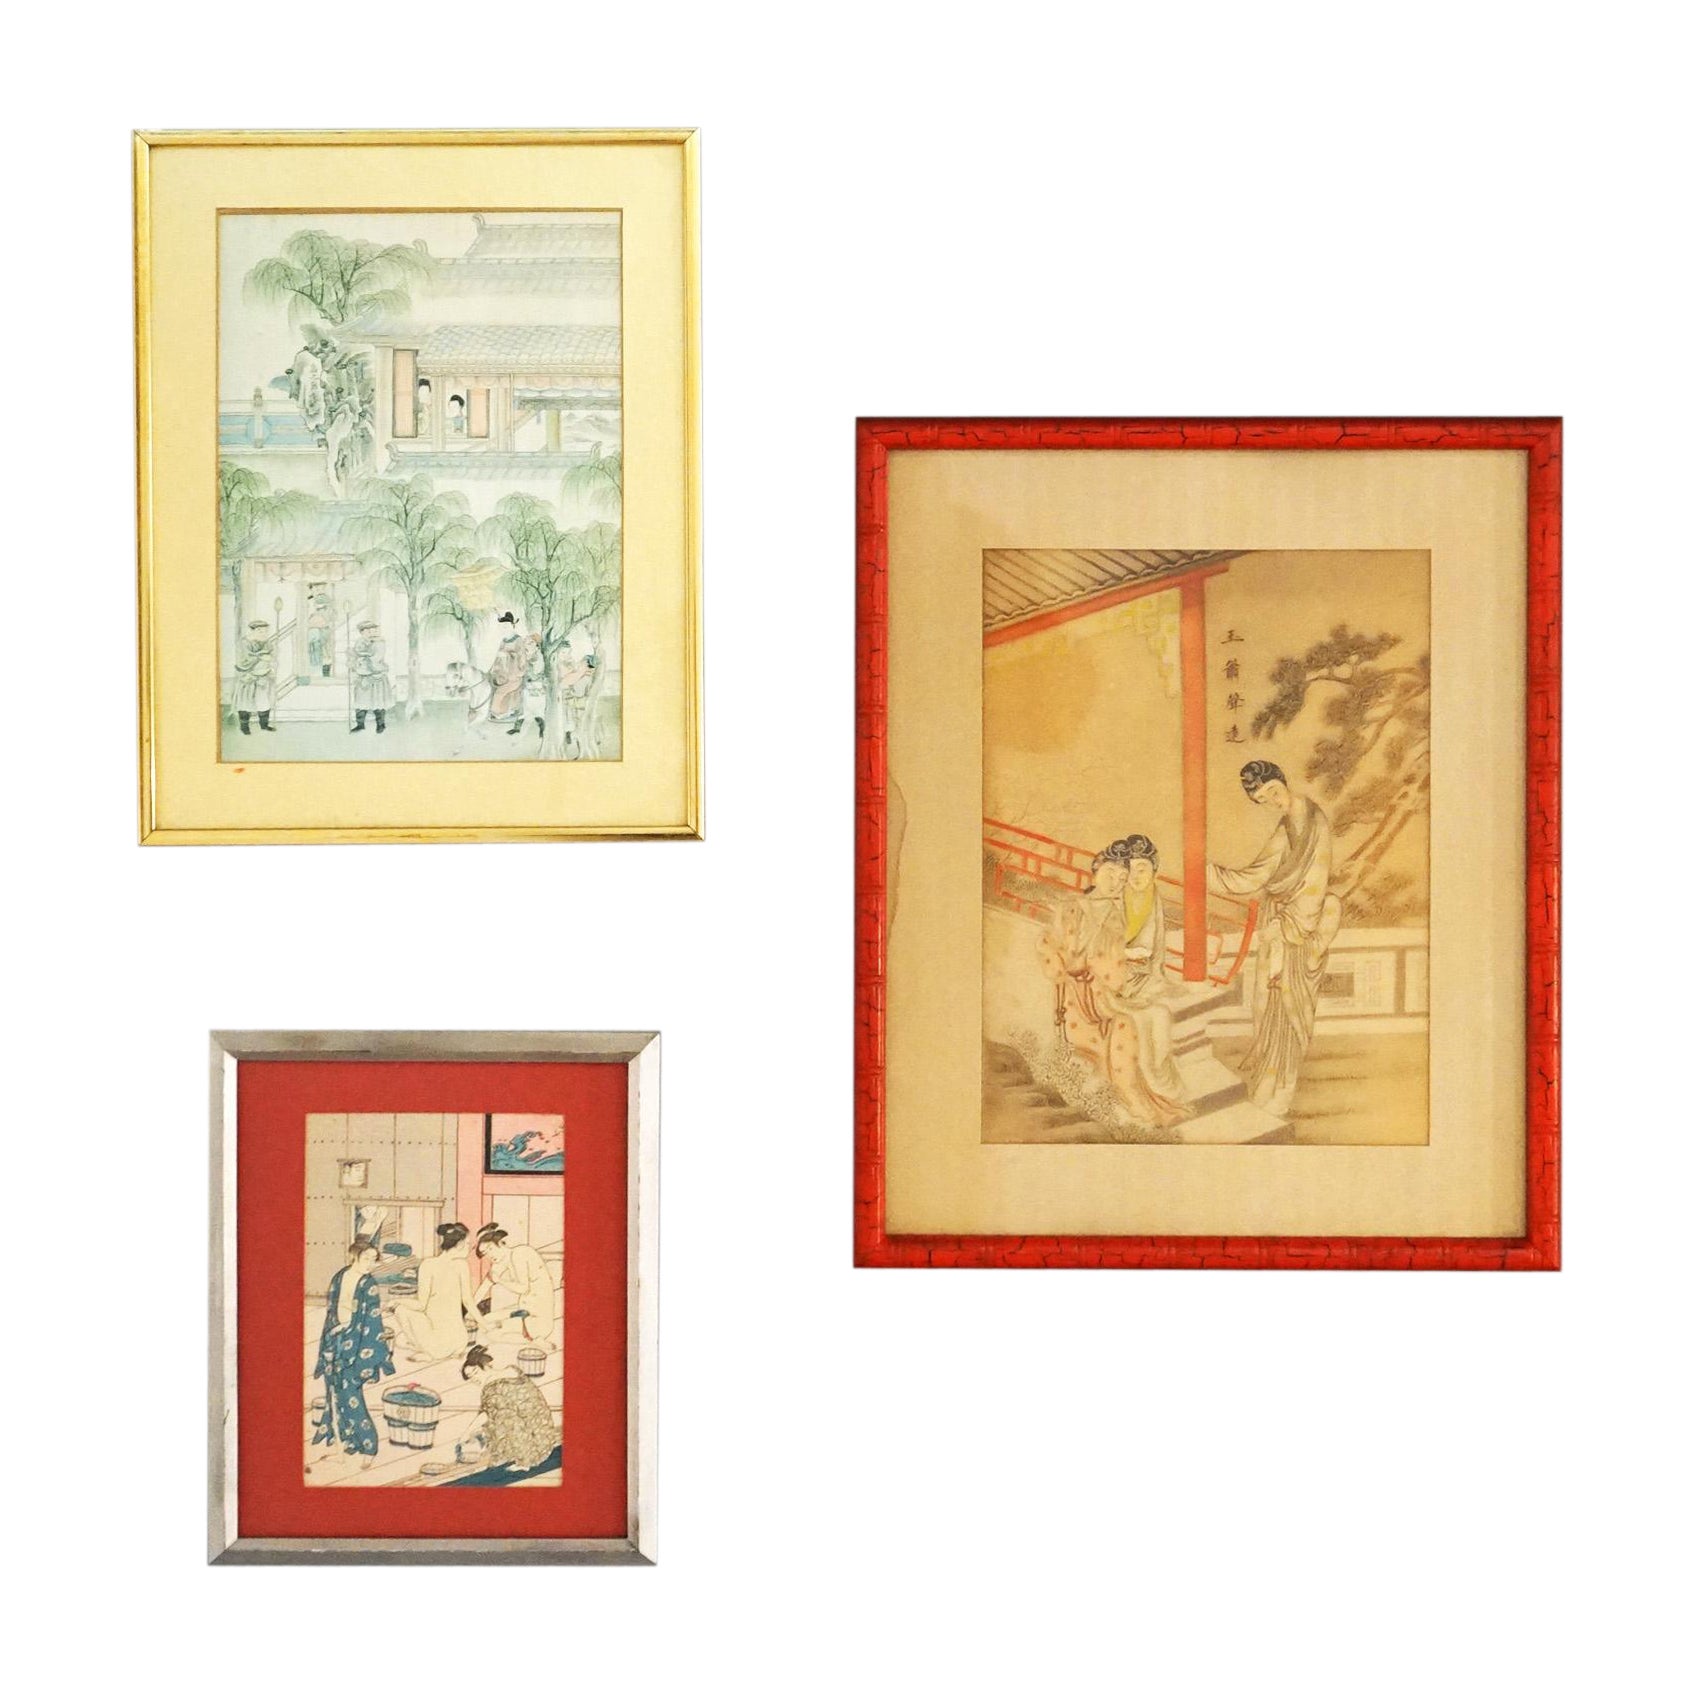 Drei japanische Genre-Holzschnitte von Torii Kiyonaga und Unknown Artist 20.